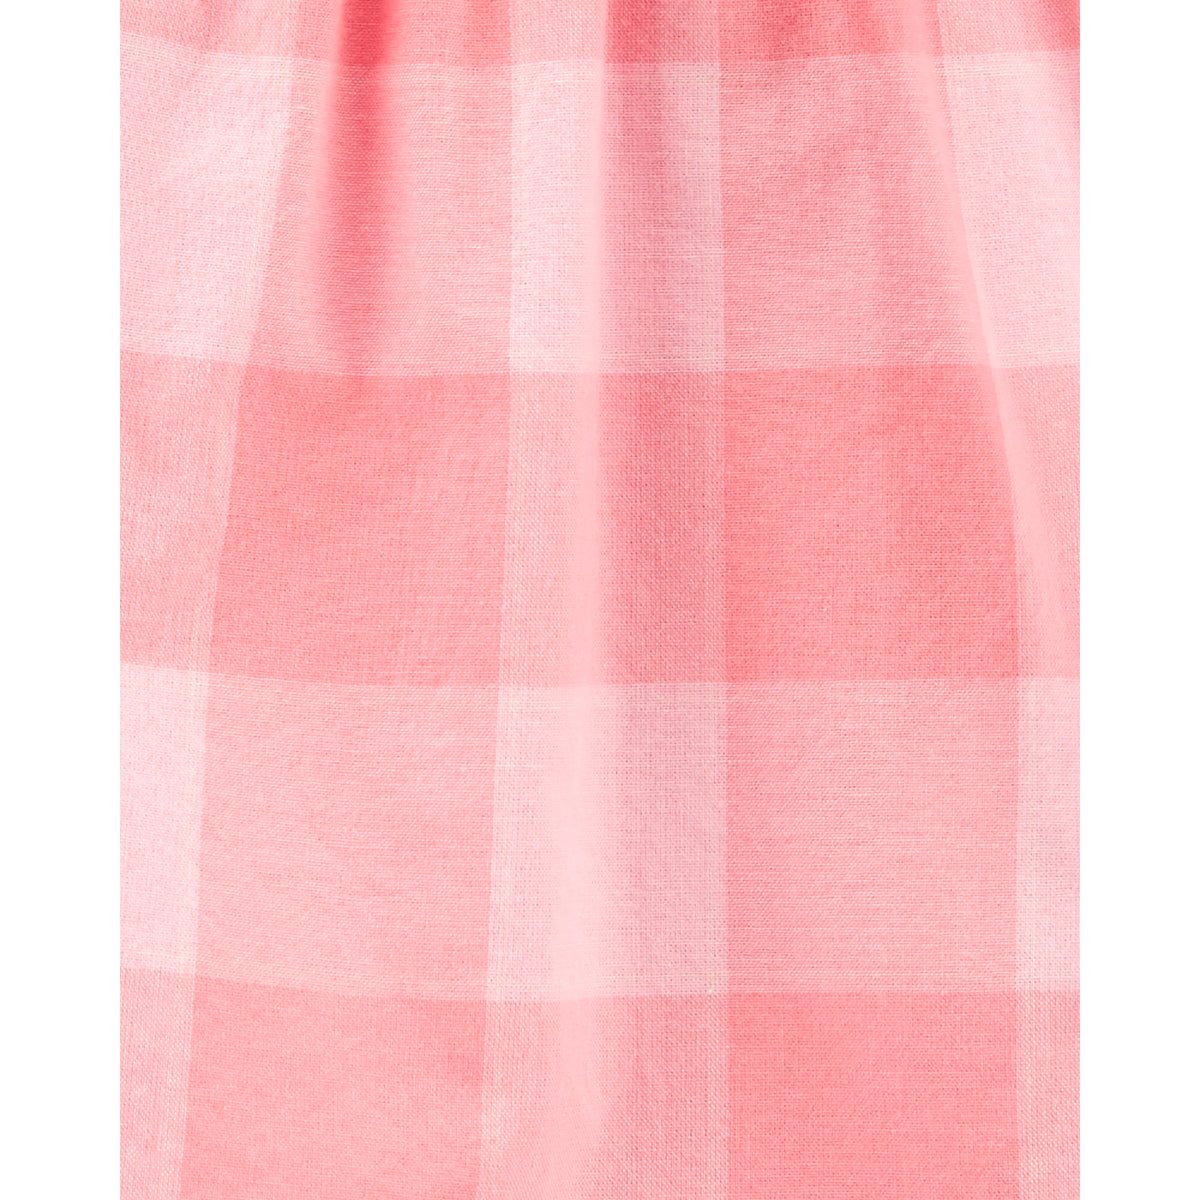 OshKosh pink plaid top (2T-5T)